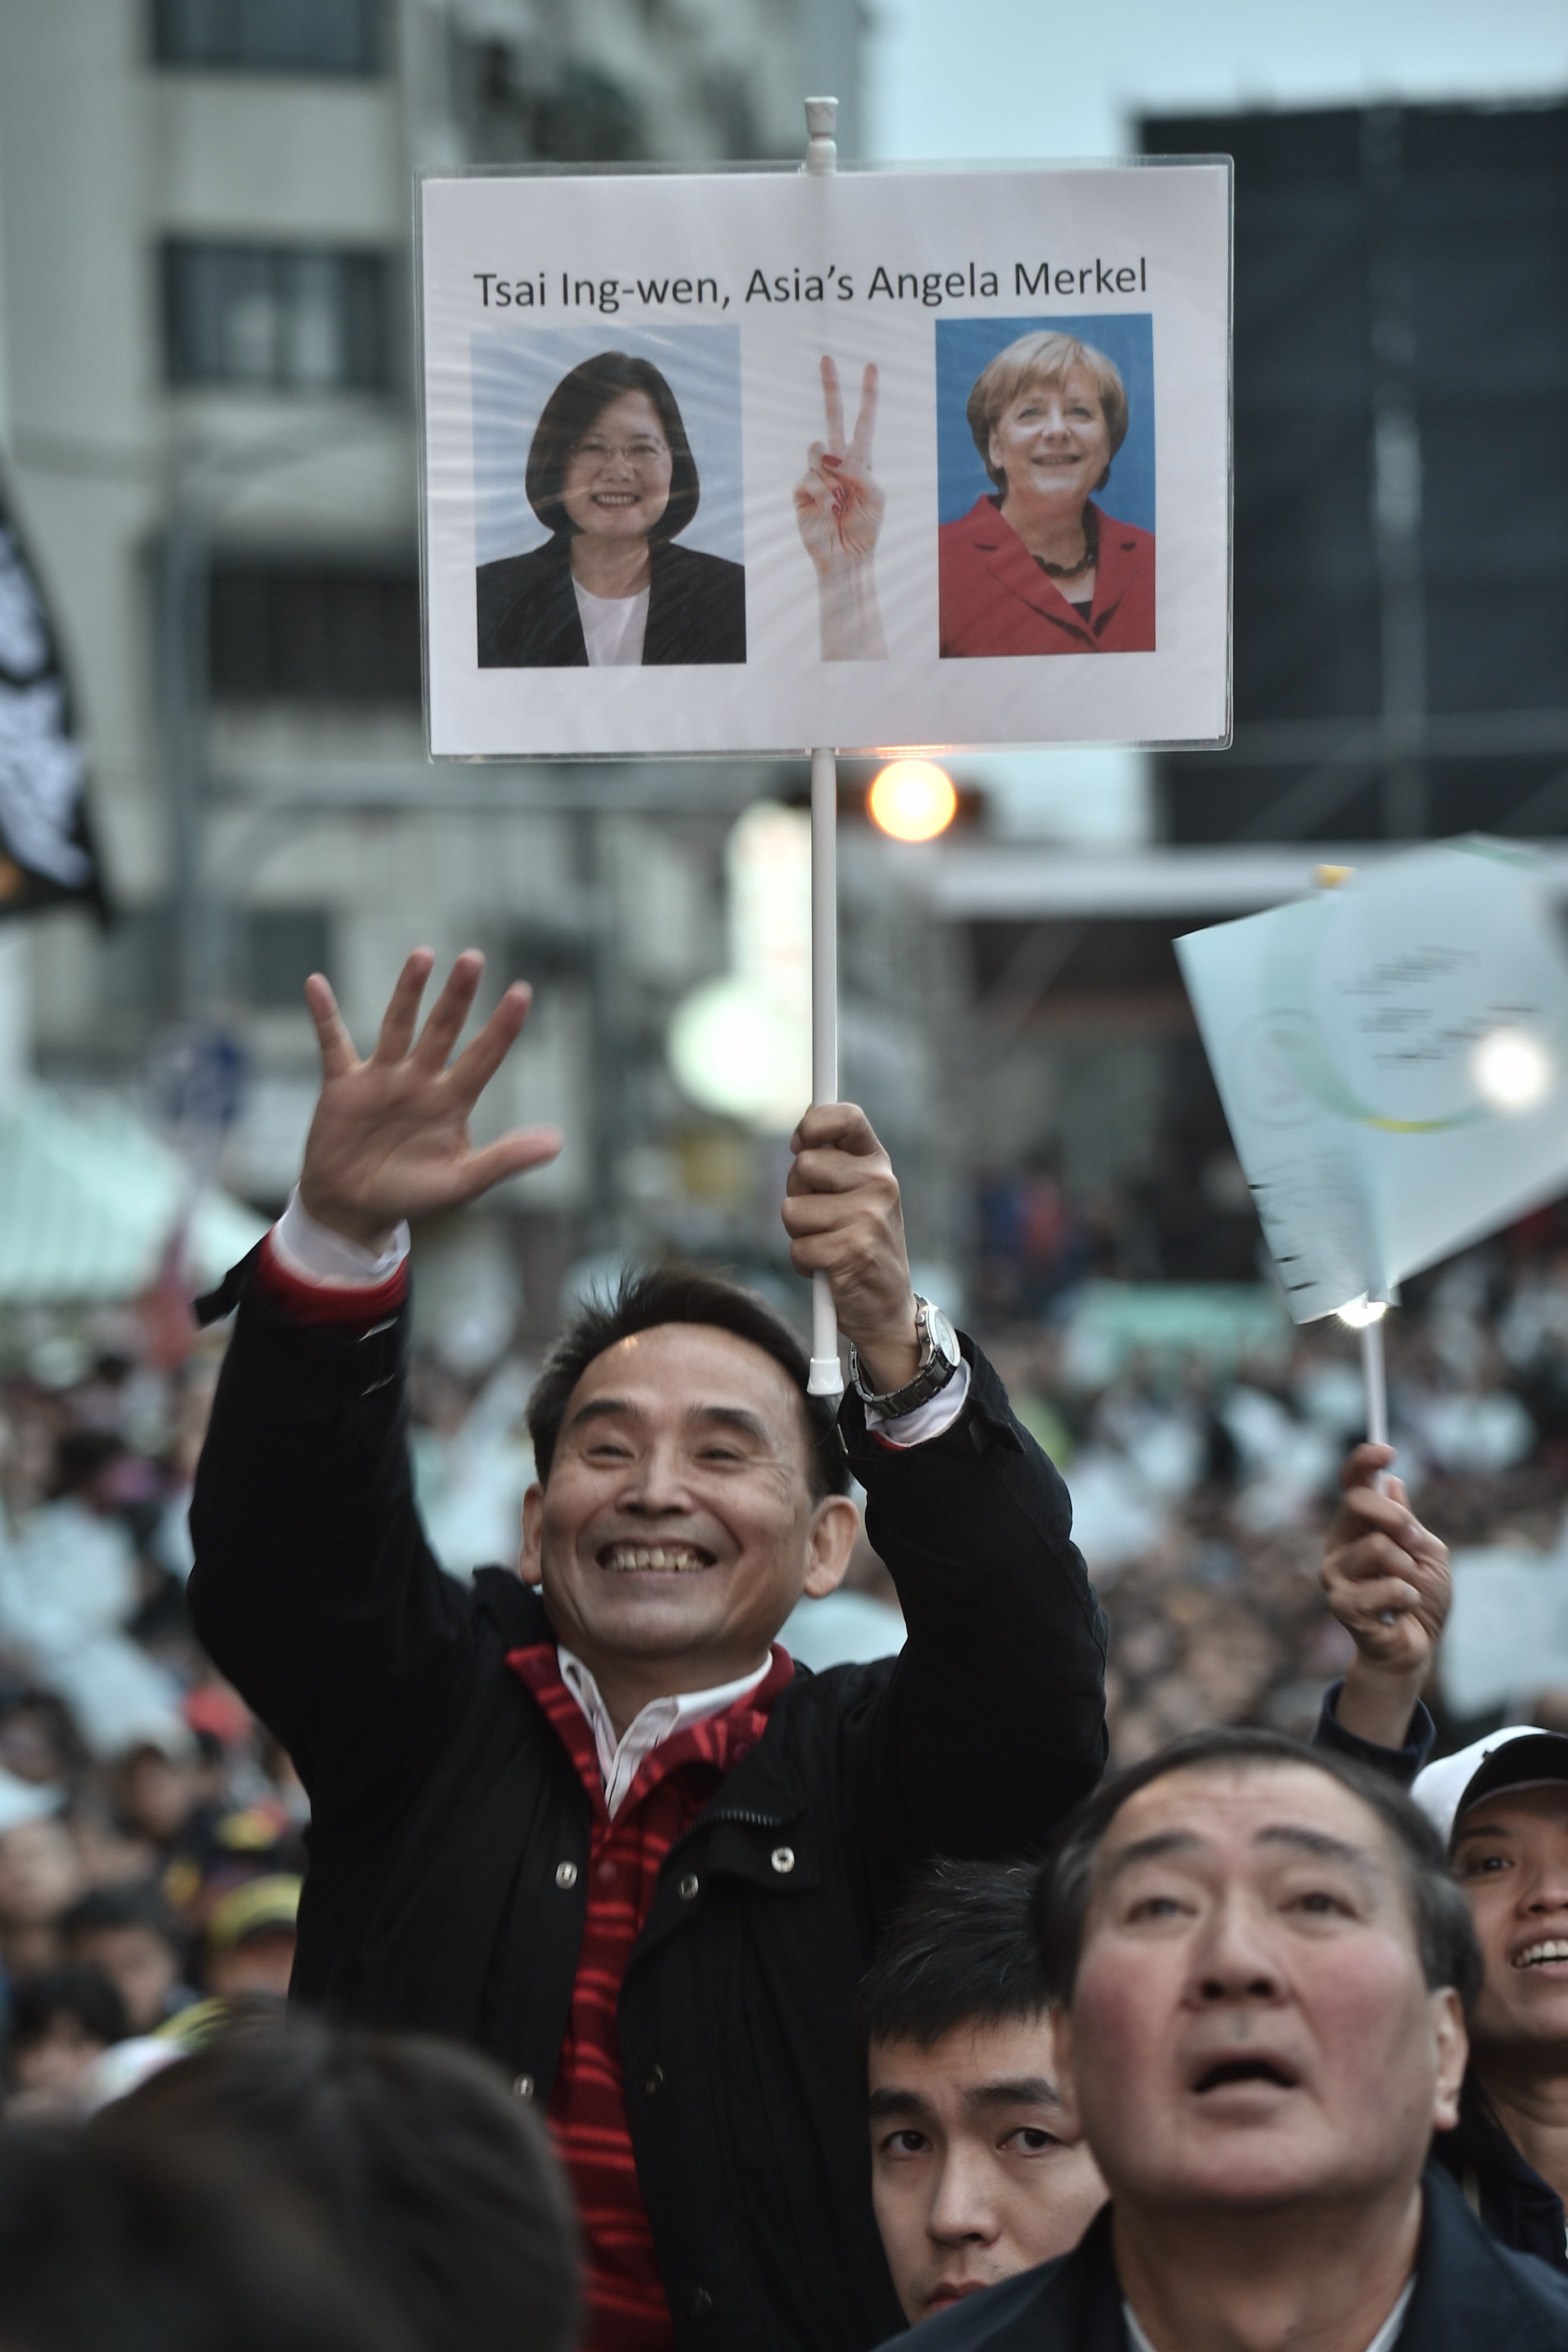 민진당(DPP) 차이잉원 주석의 지지자가 대만 최초의 여성총통을 기원하며 환하게 웃어보이고 있다. ⓒAFPBBNews=News1